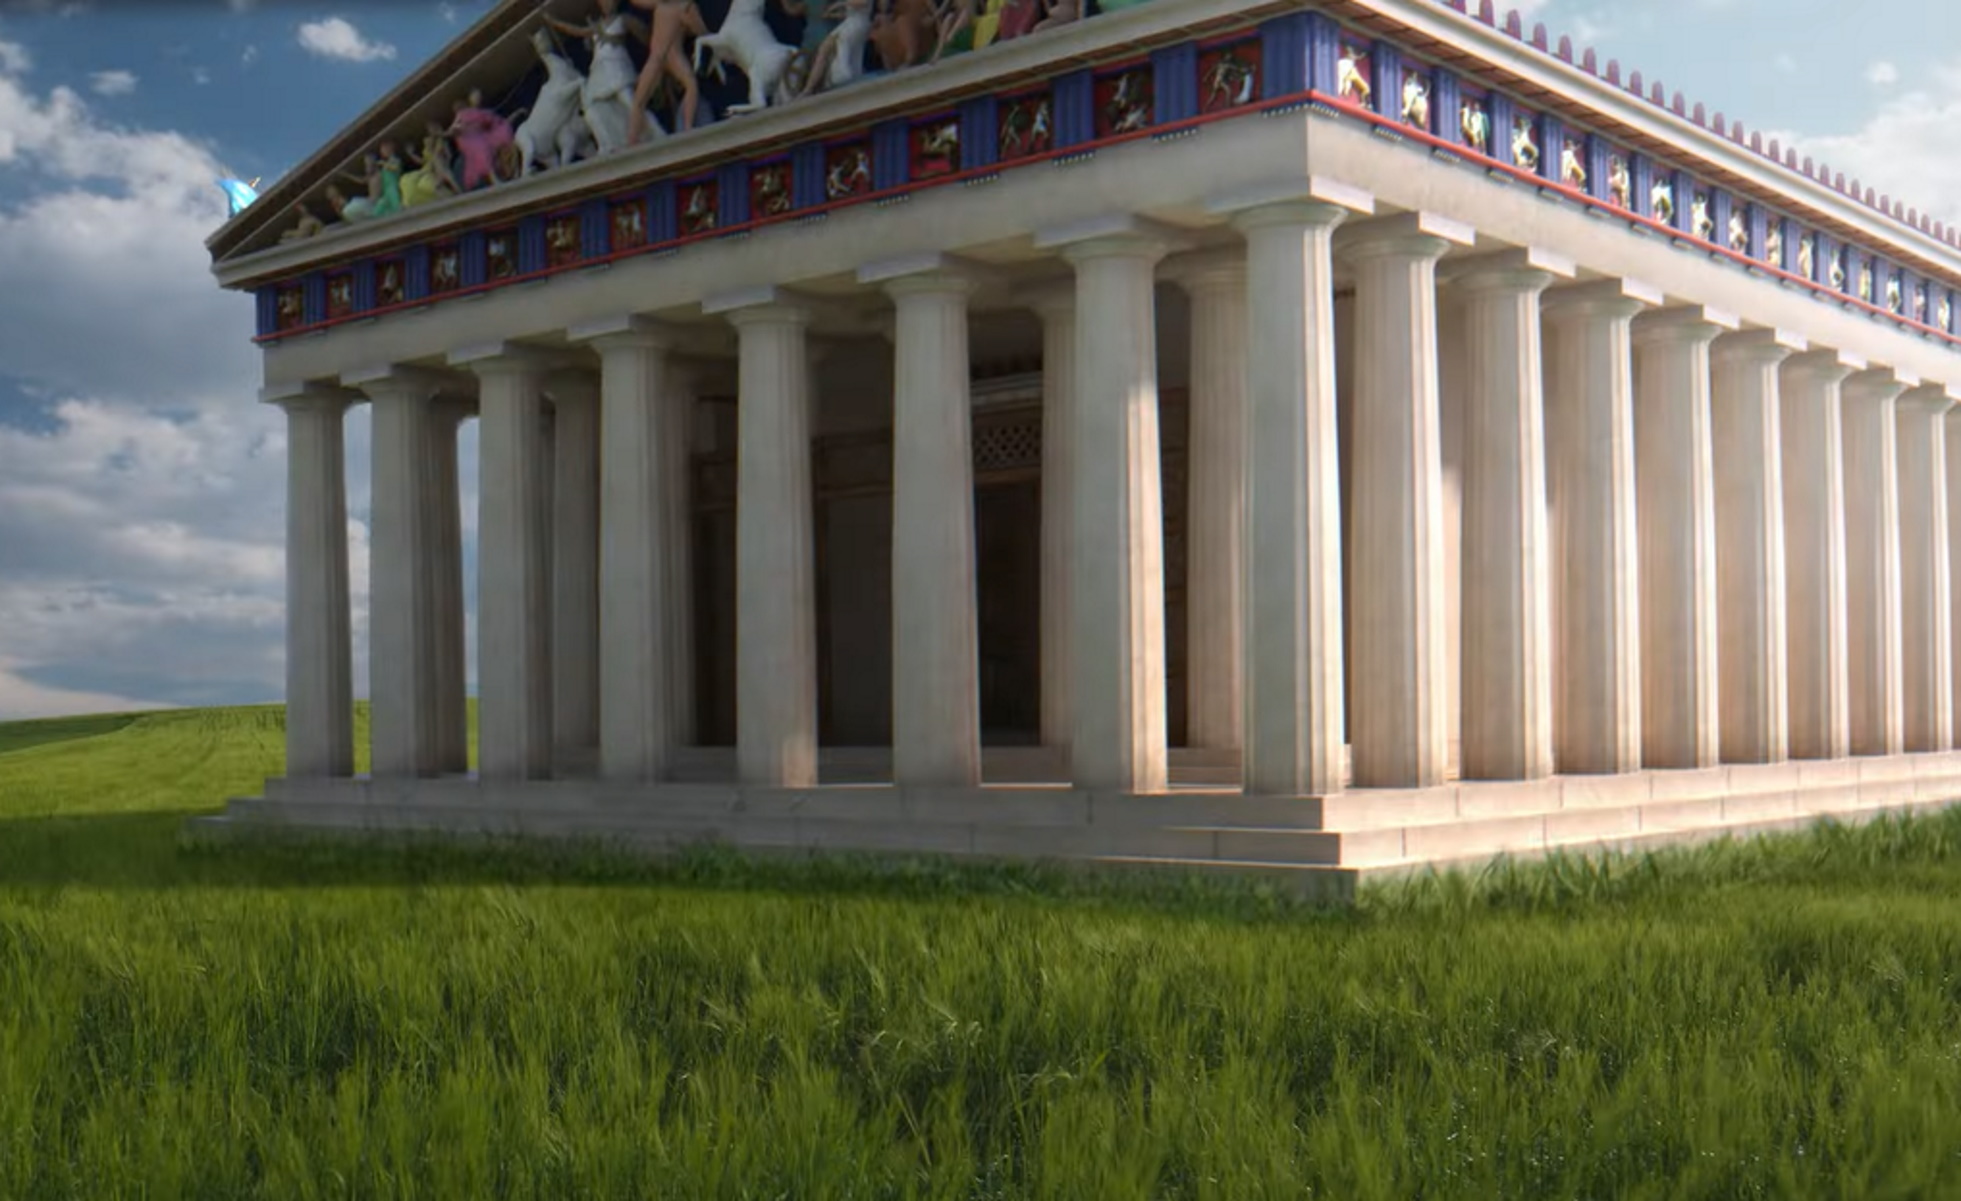 Ακρόπολη: Ξενάγηση στο μνημείο όπως ήταν στην αρχαιότητα μέσα από μία εφαρμογή